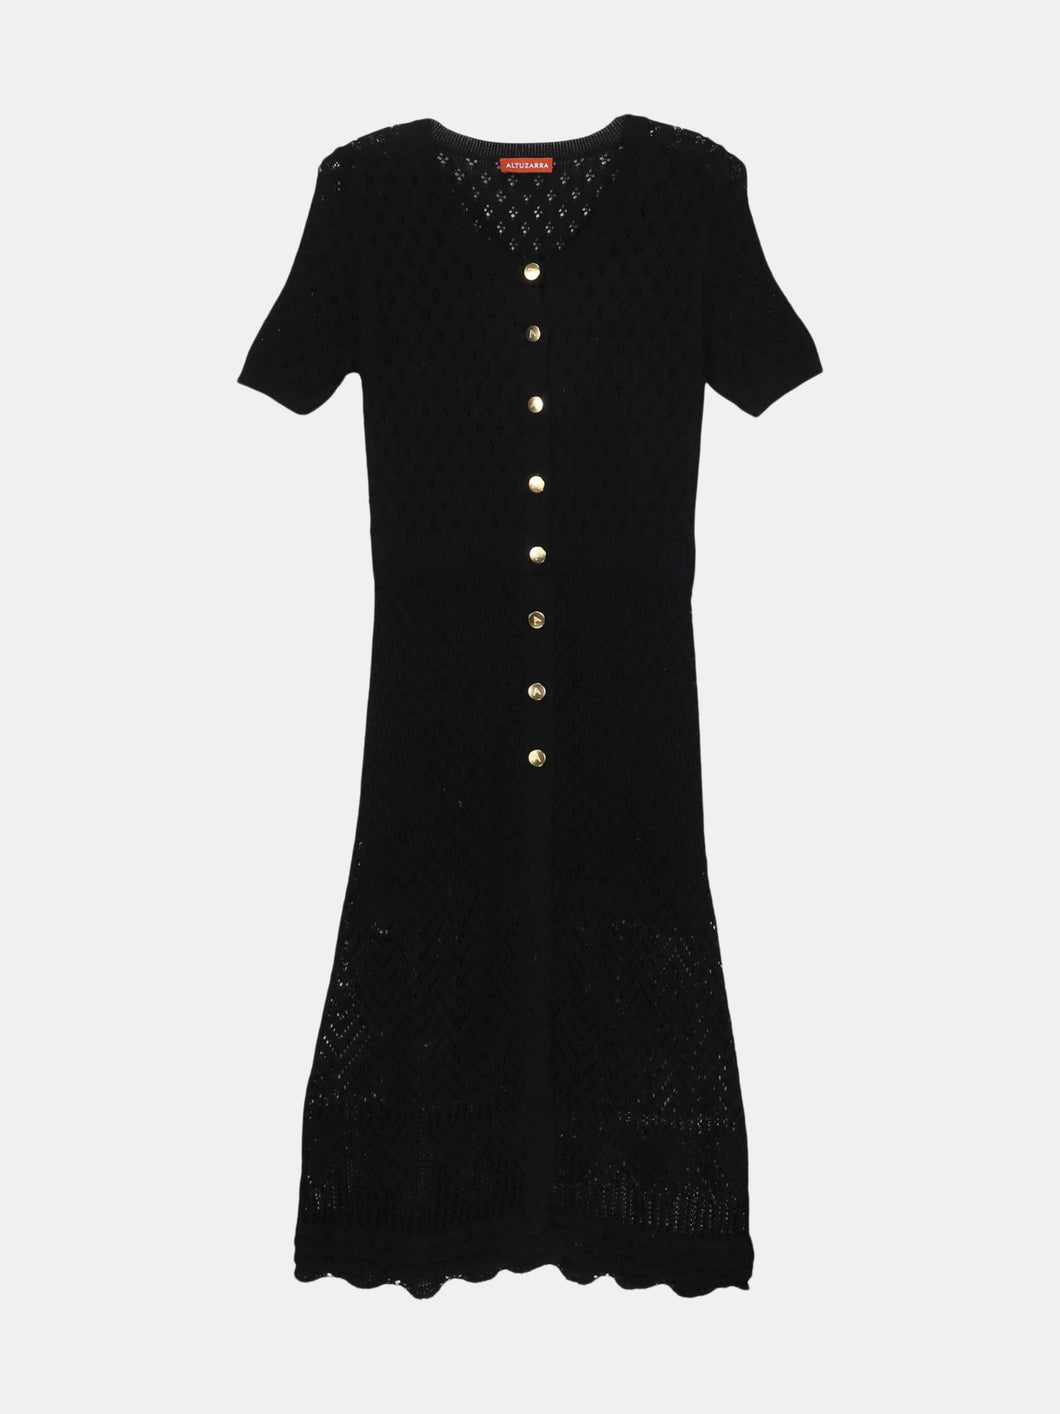 Altuzarra Women's Black Doyle Knit Dress